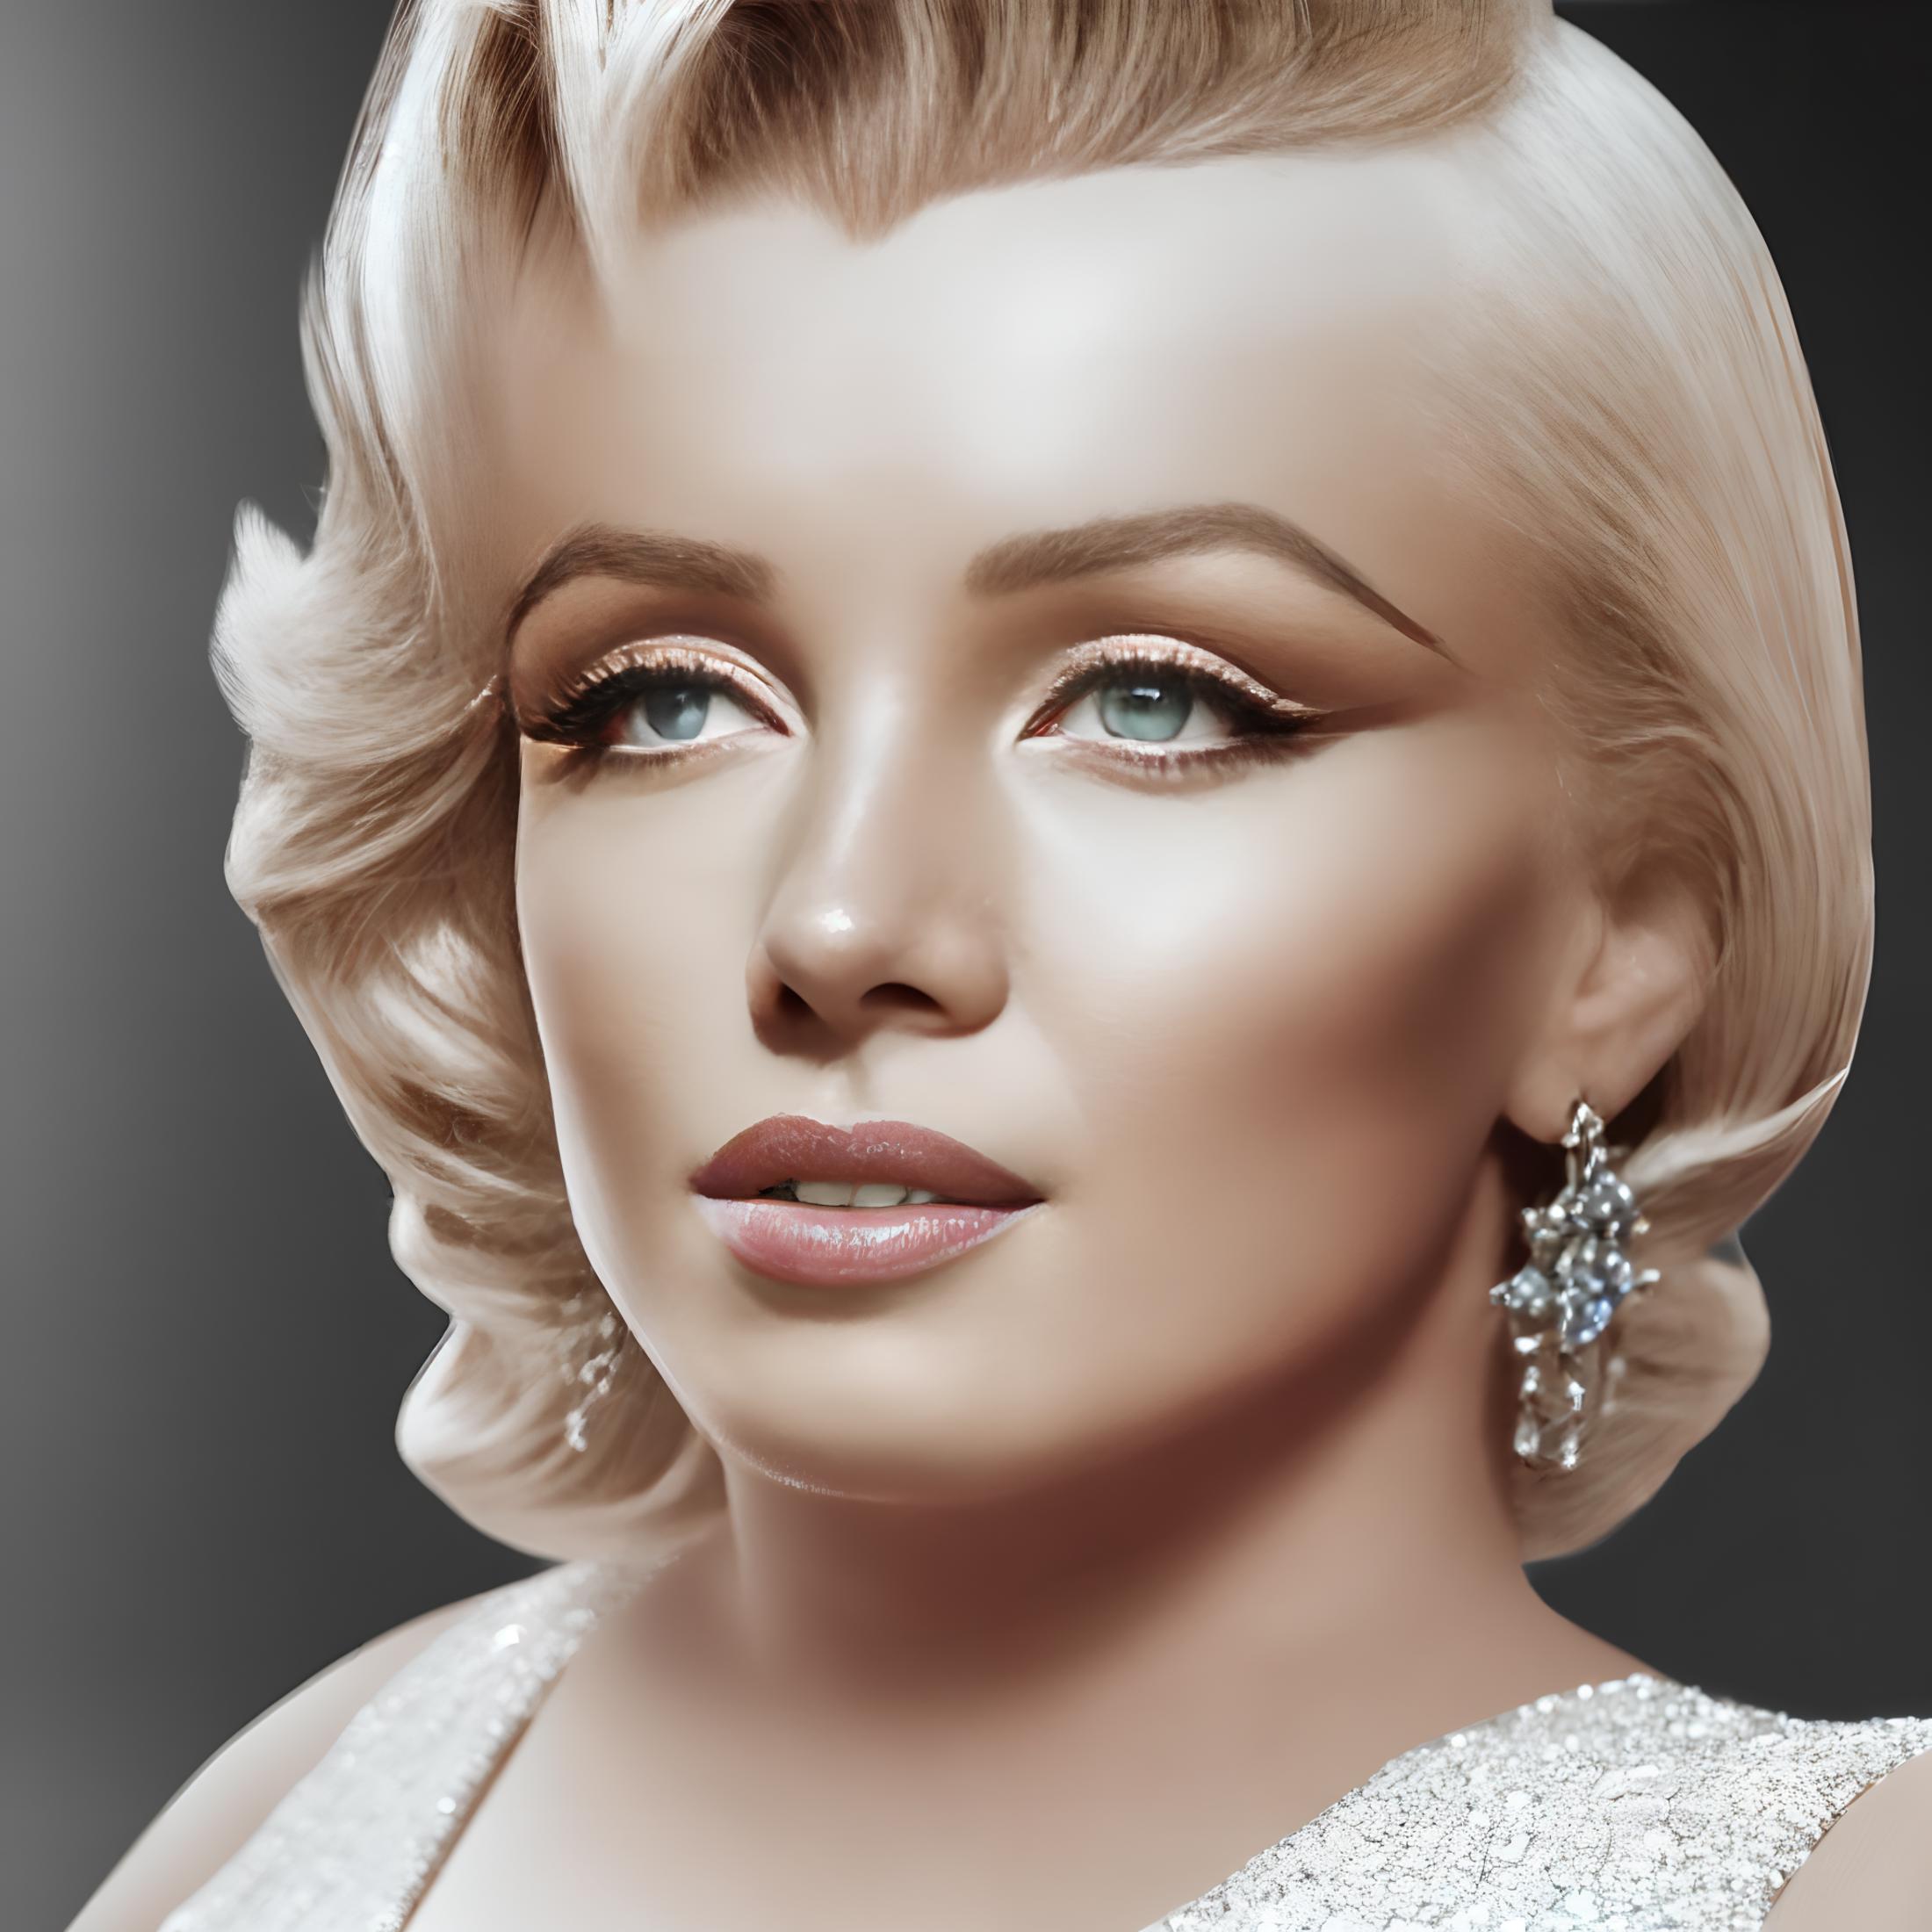 Marilyn Monroe image by Jentix